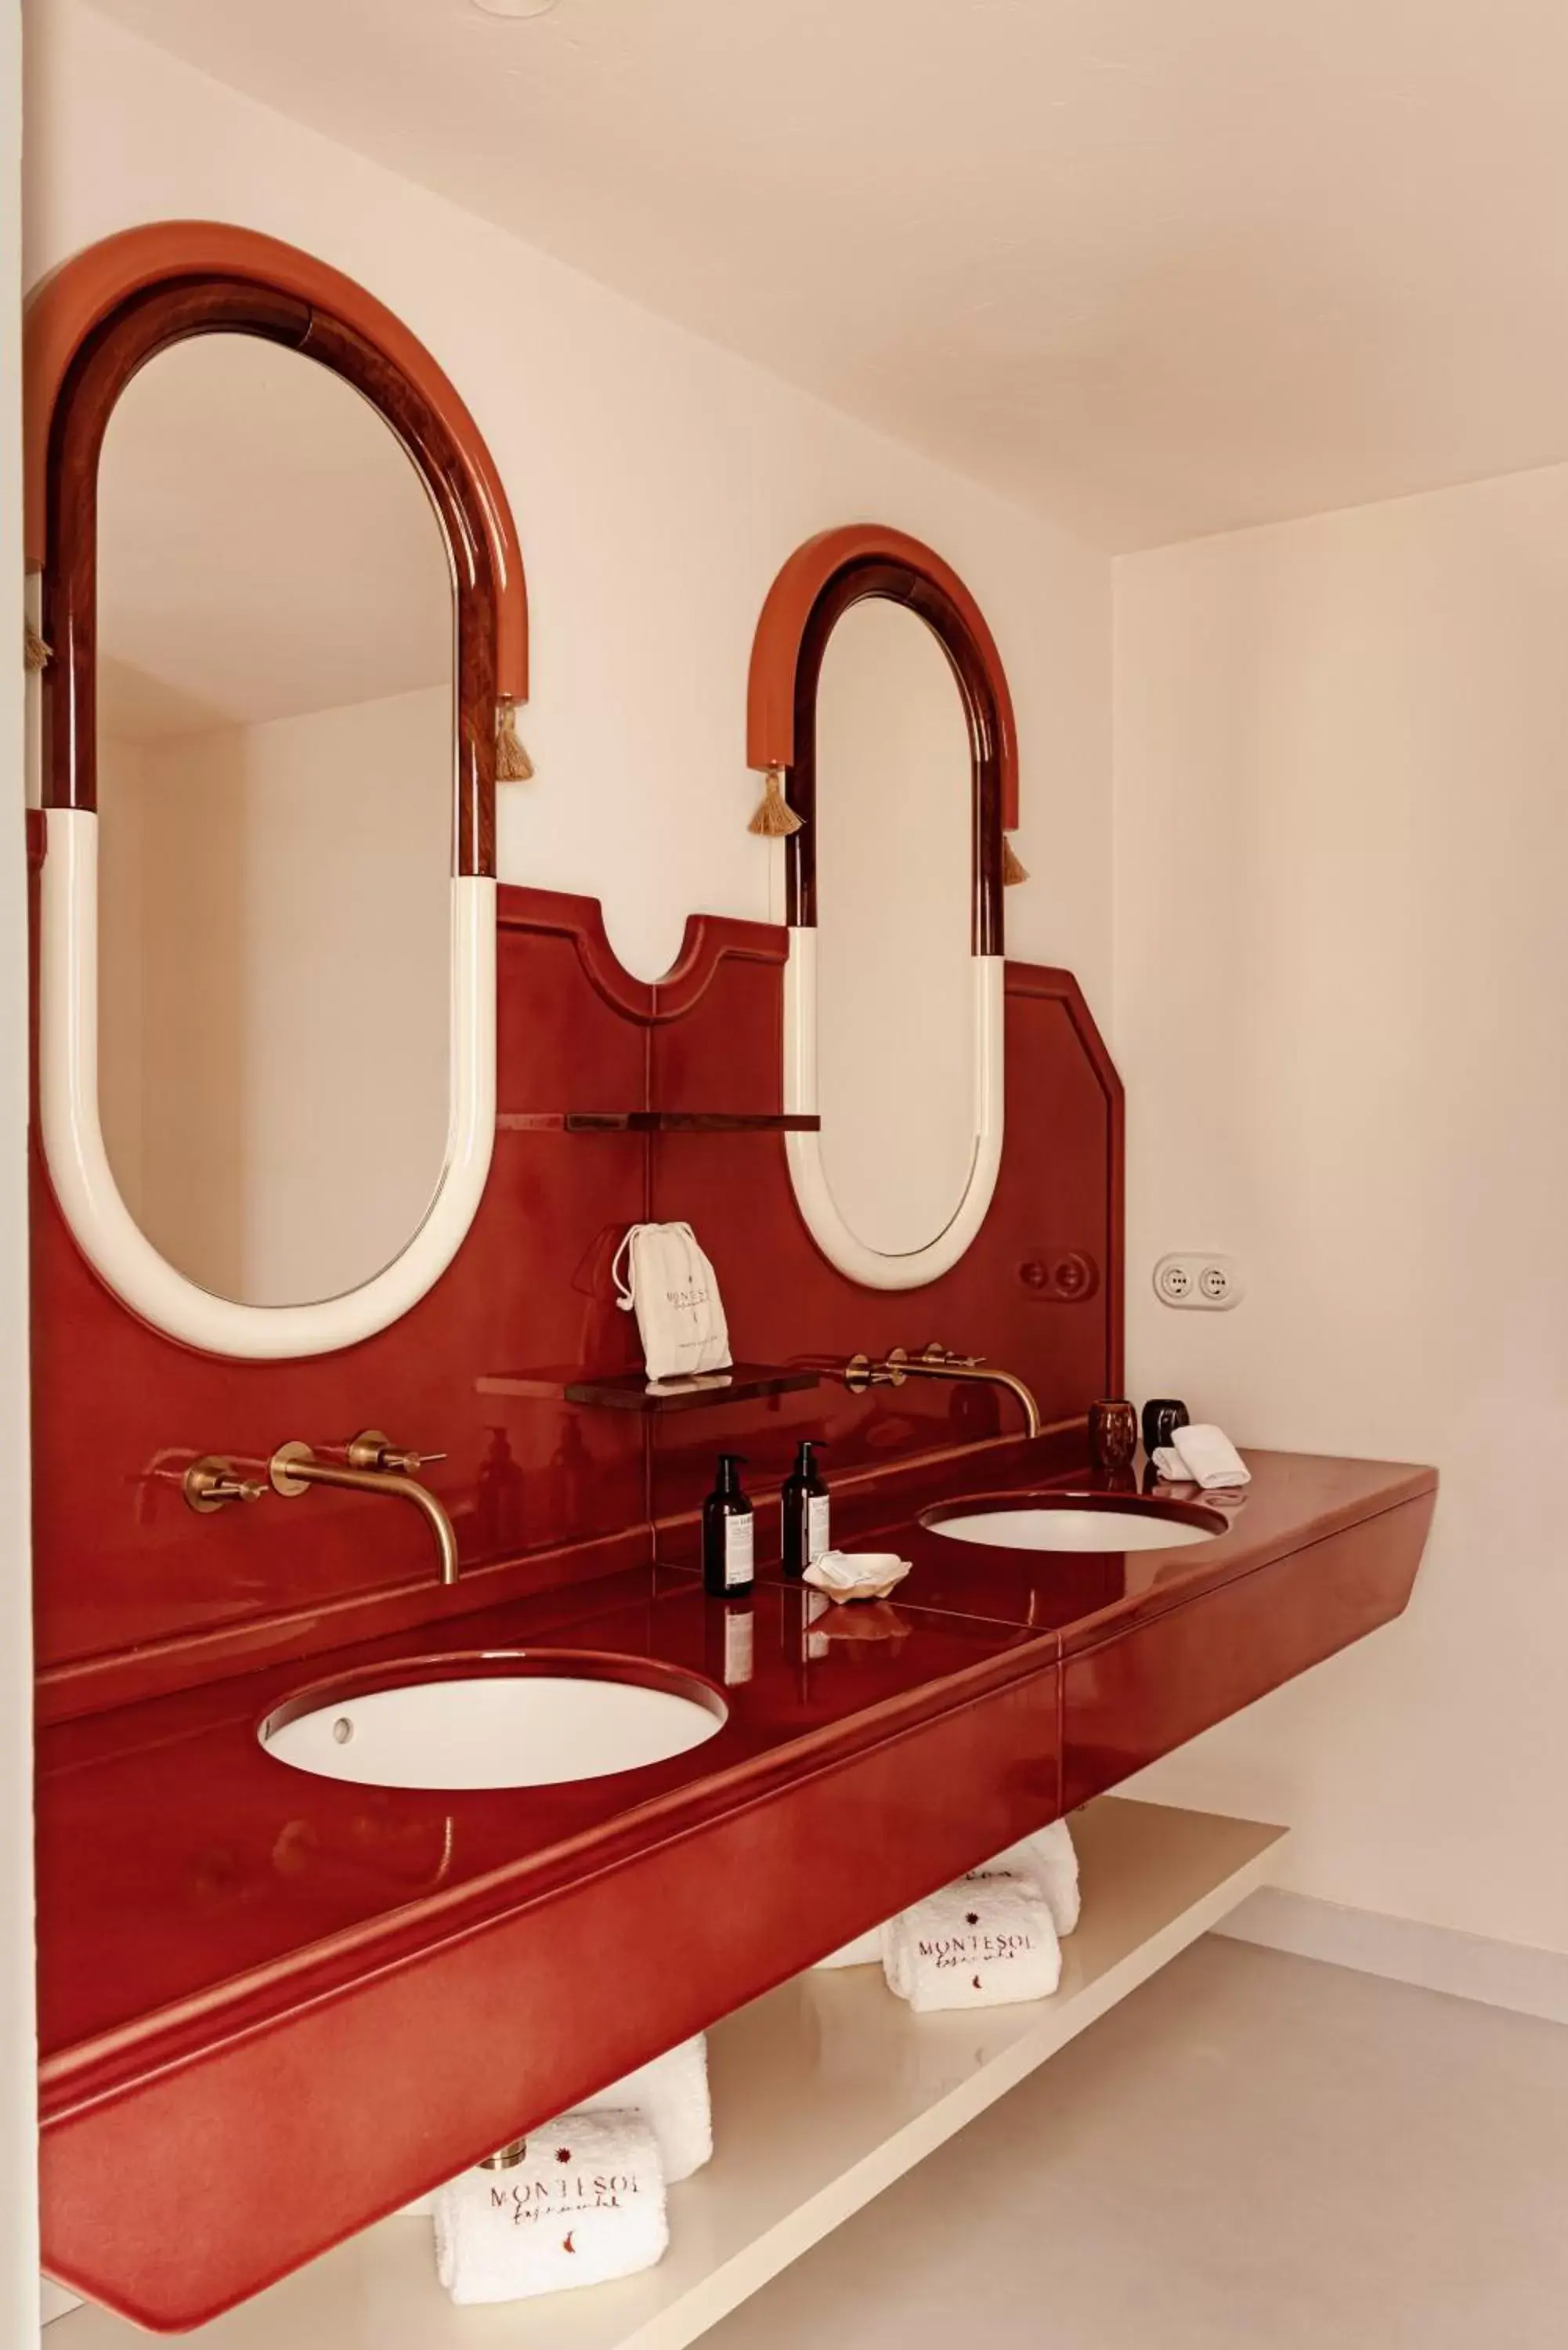 Bathroom in Montesol Experimental Ibiza